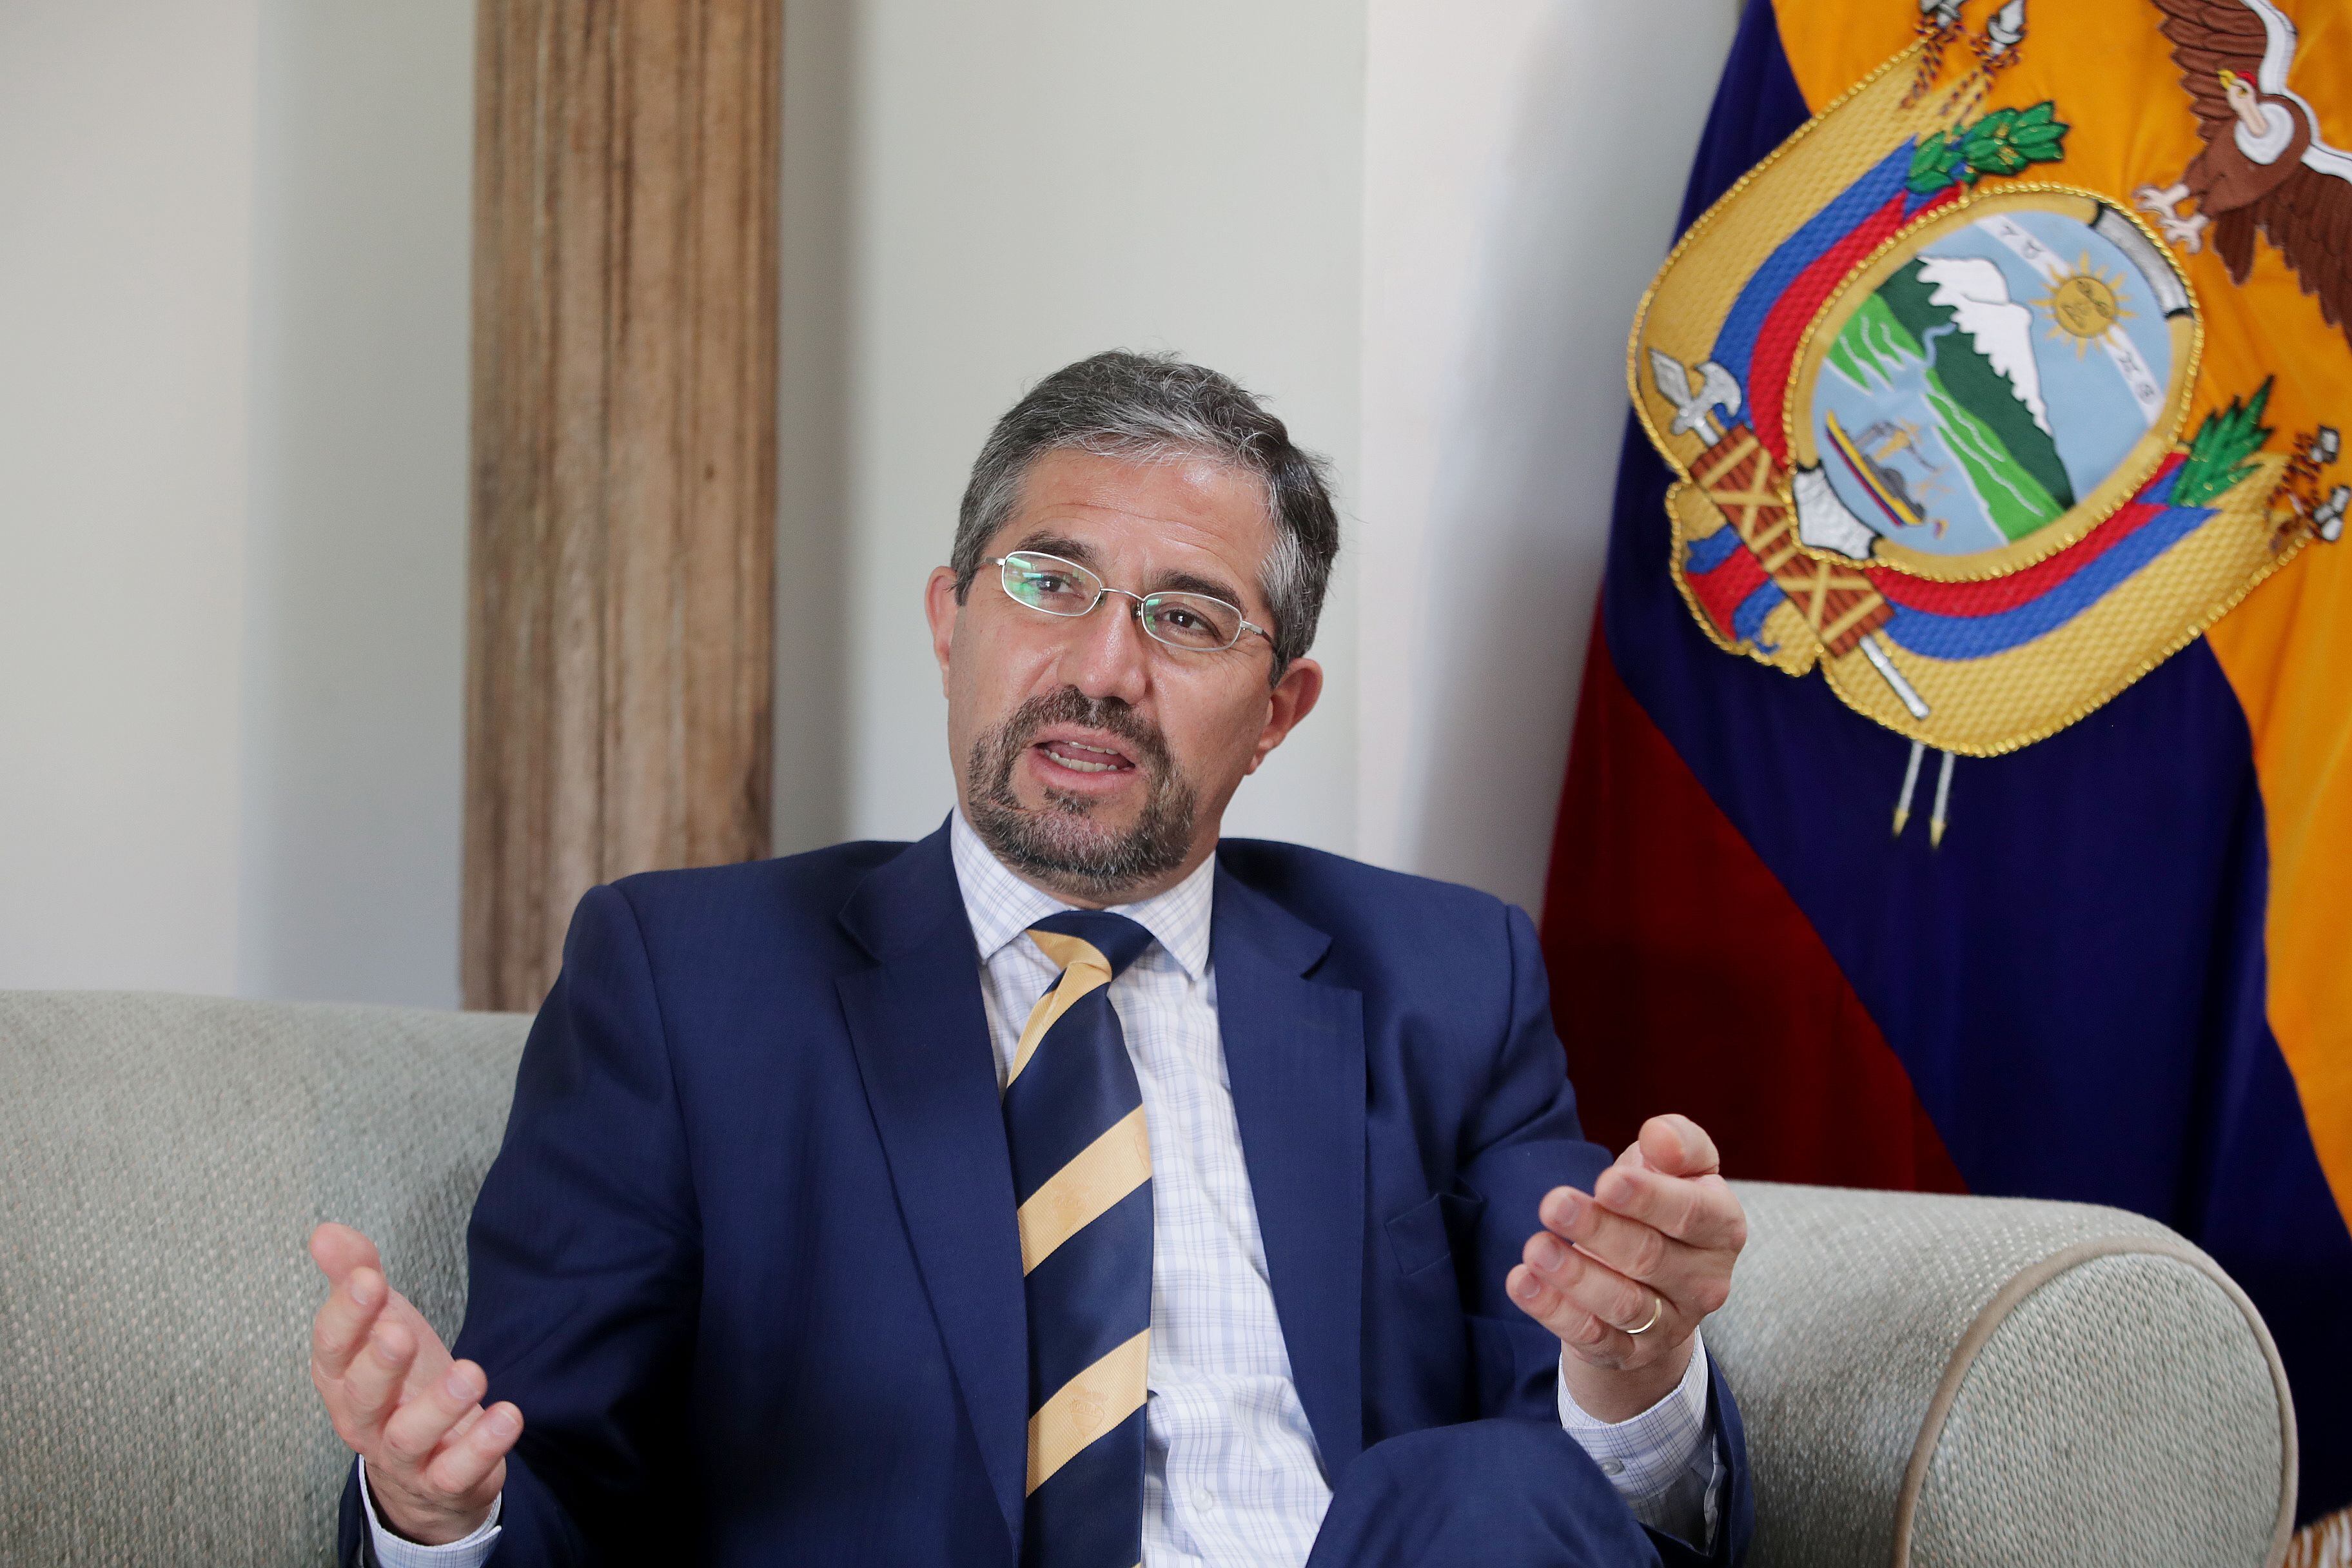 El embajador permanente de Ecuador ante la OEA, Mauricio Montalvo Samaniego, tomó la palabra para agradecer el gesto del Consejo Permanente 